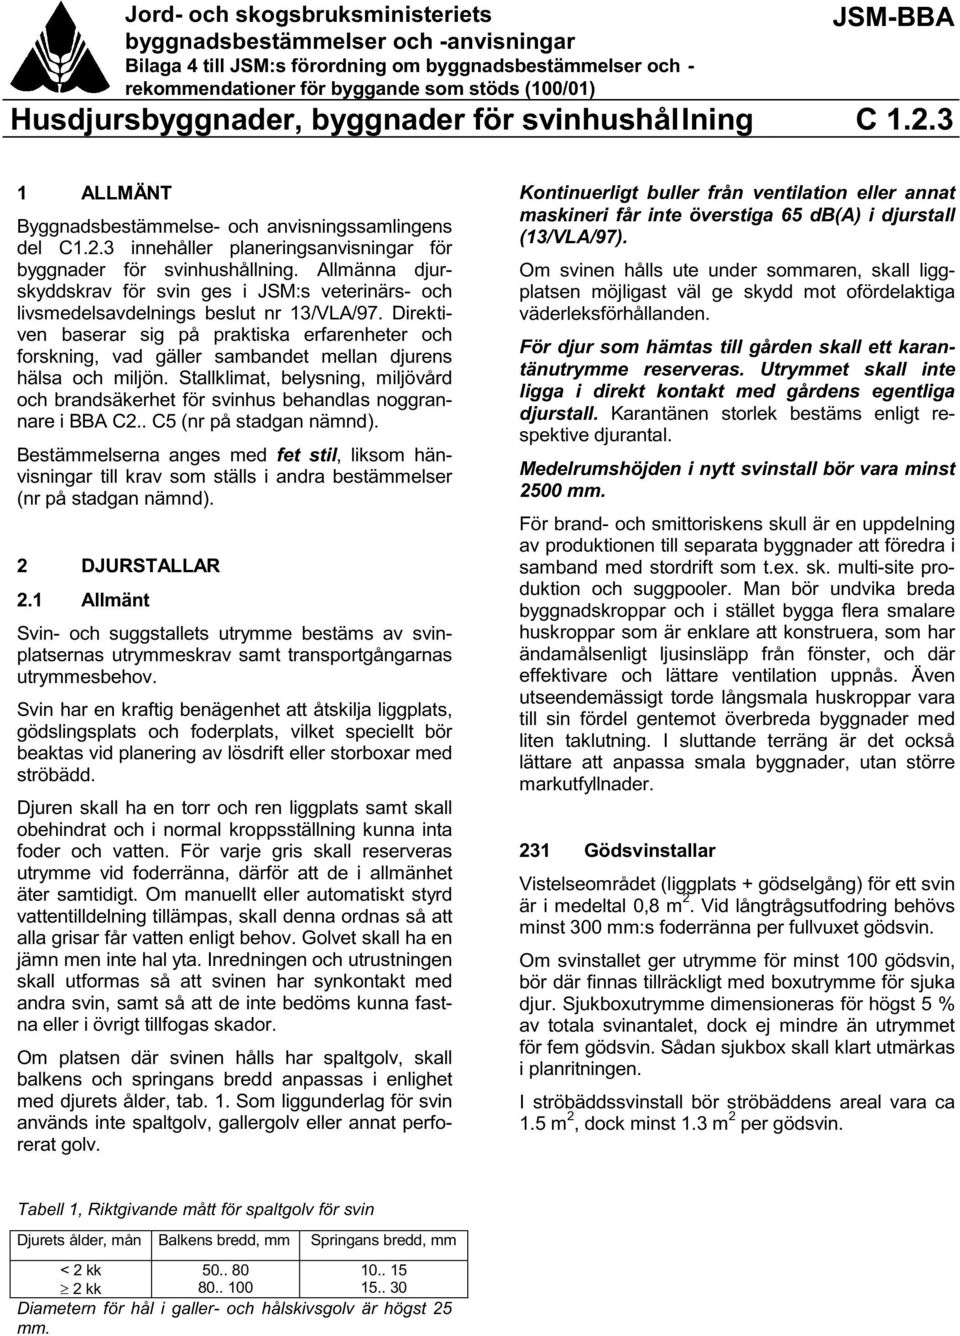 Allmänna djurskyddskrav för svin ges i JSM:s veterinärs- och livsmedelsavdelnings beslut nr 13/VLA/97.